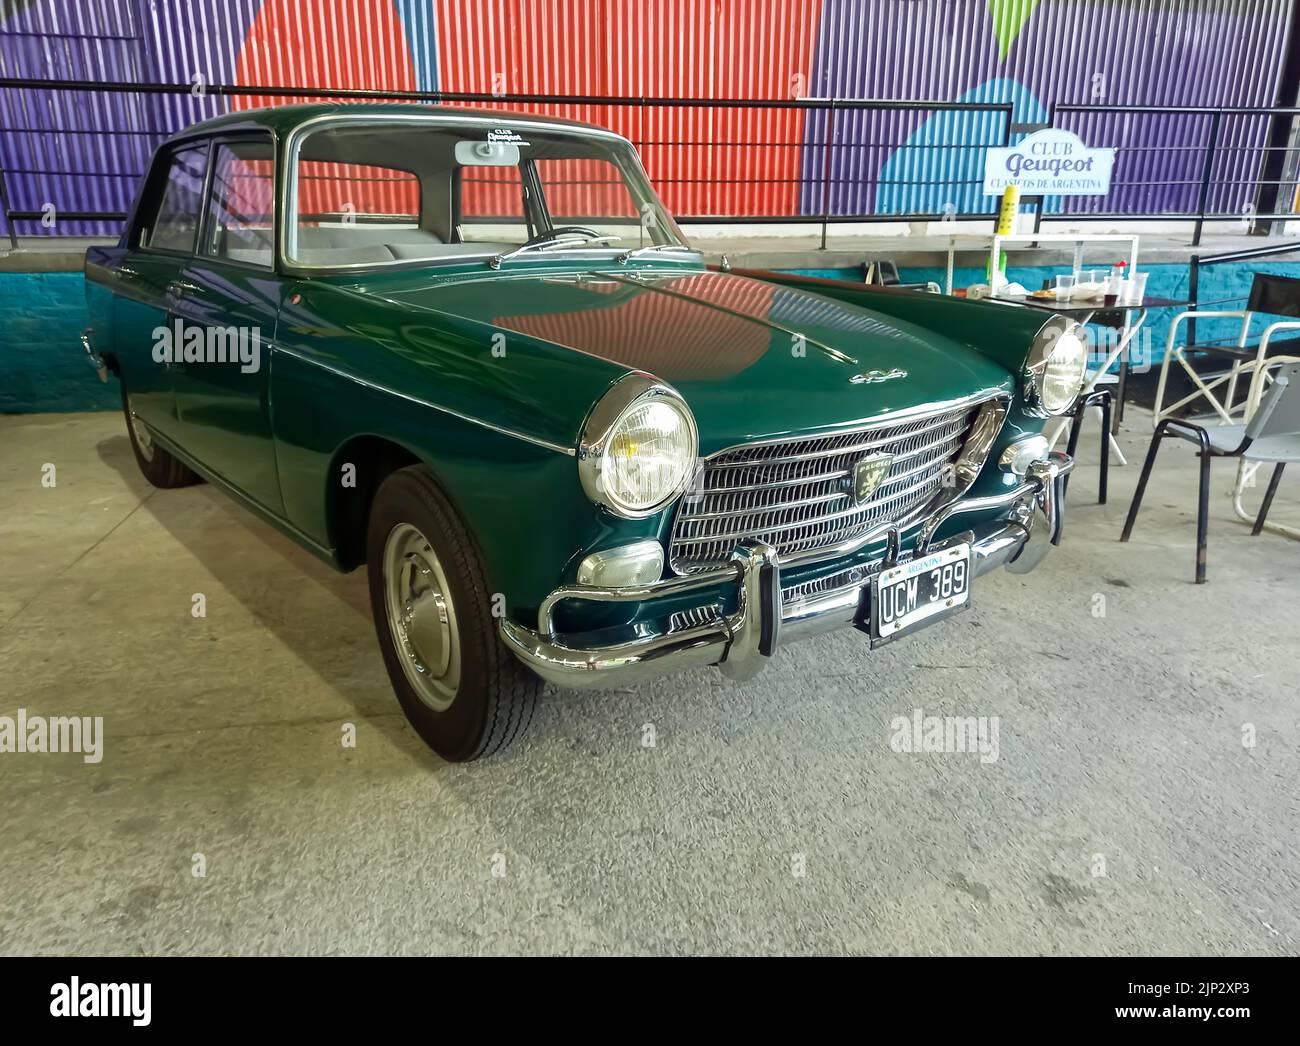 Old Green beliebt Peugeot 404 Limousine 1960 - 1975 in einem Lagerhof. Vorderansicht. Kühlergrill. Expo Fierro 2022 Oldtimer-Show. Copyspace. Stockfoto